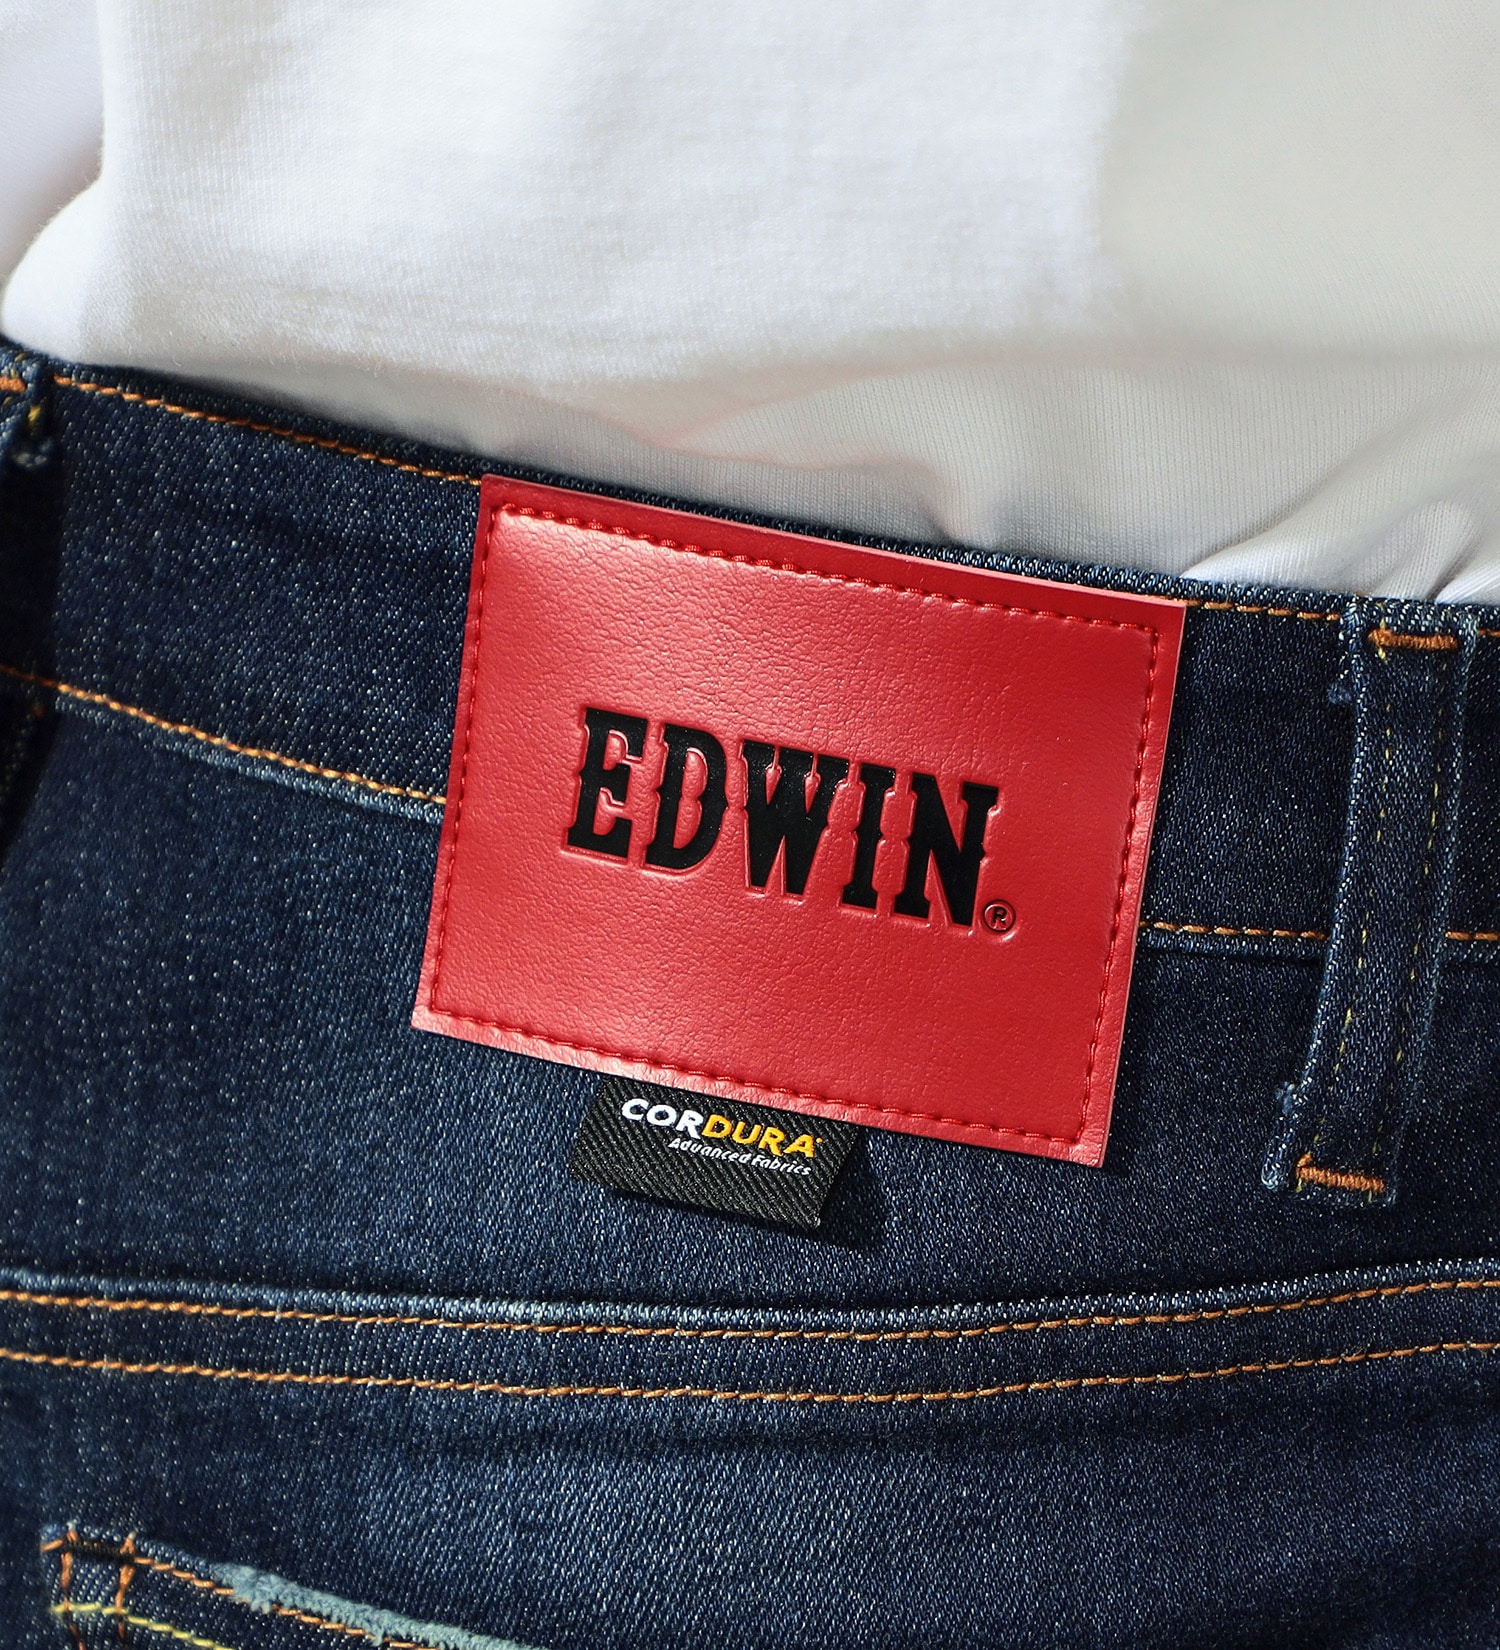 EDWIN(エドウイン)のバイク用 コーデュラストレッチデニム ハイパーストレッチCORDURA denim fabric|パンツ/デニムパンツ/メンズ|中色ブルー